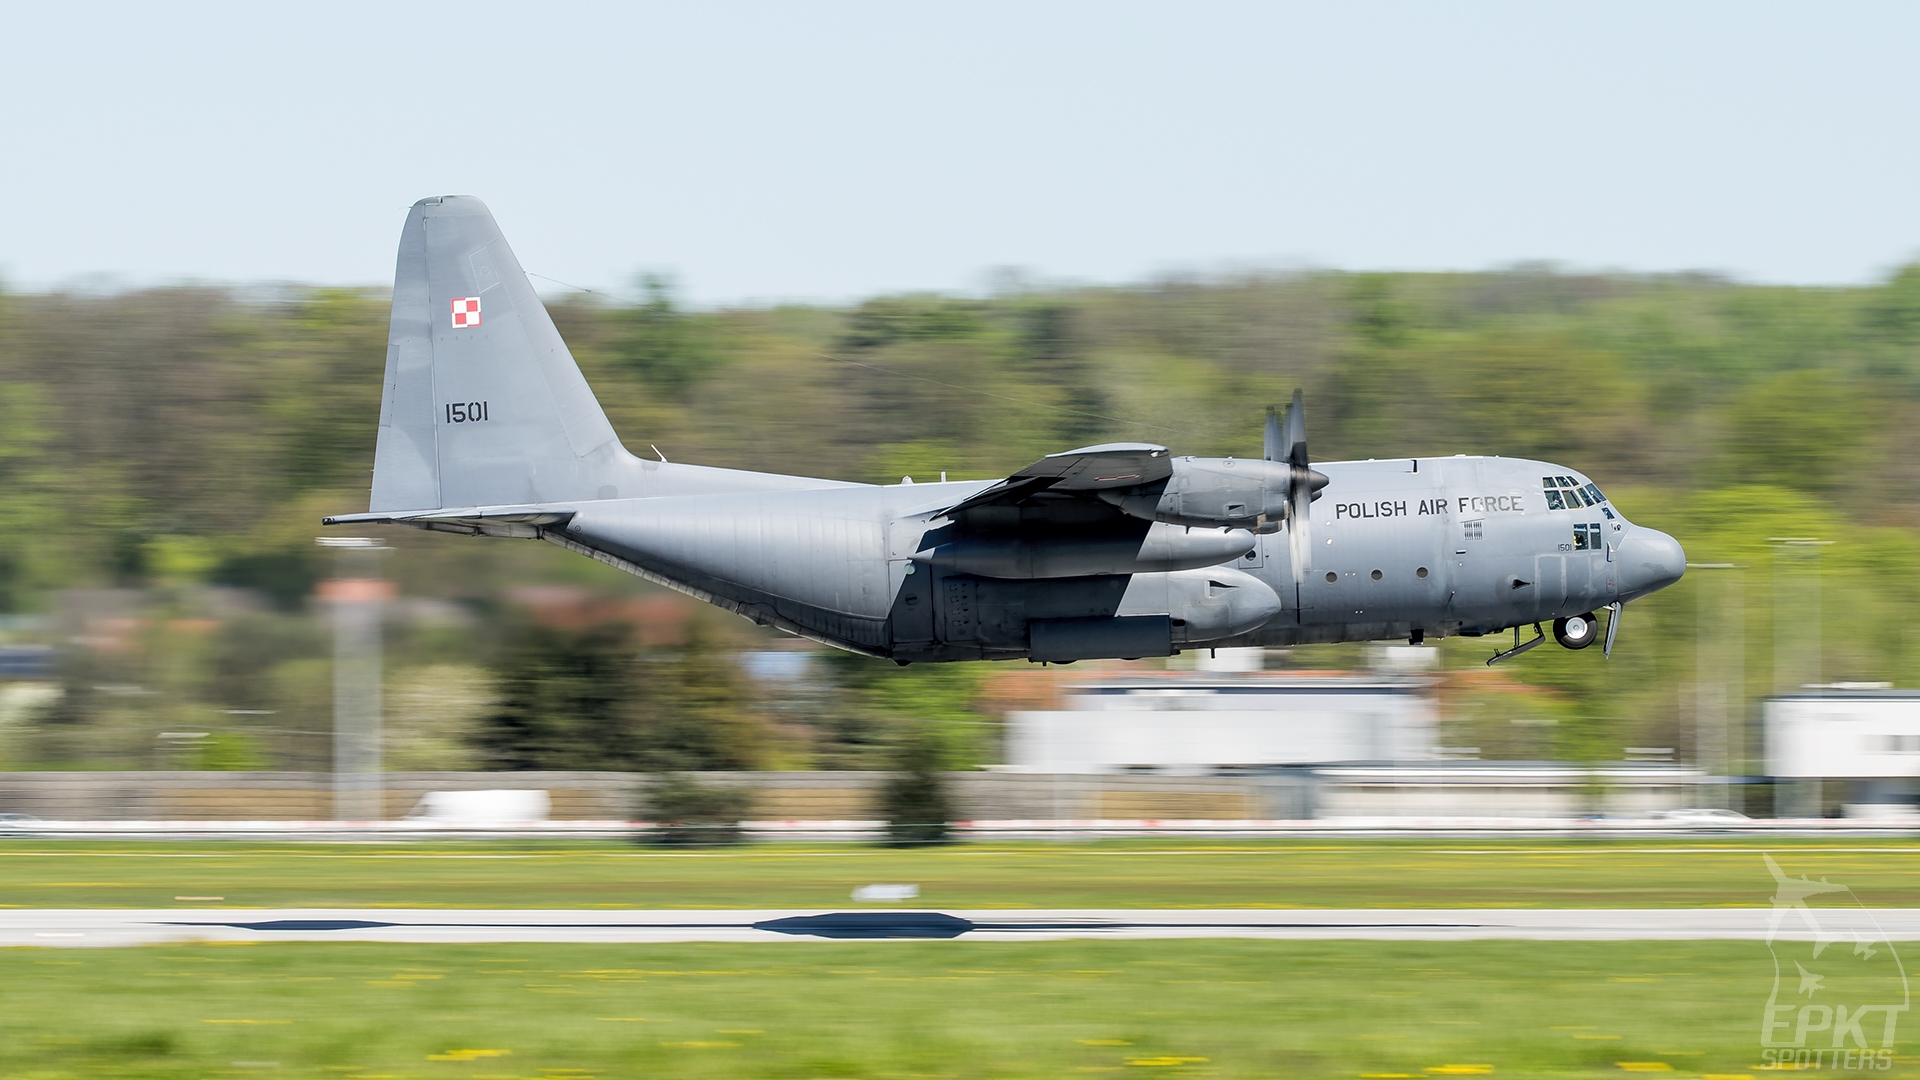 1501 - Lockheed C-130 E Hercules (Poland - Air Force) / Balice - Krakow Poland [EPKK/KRK]